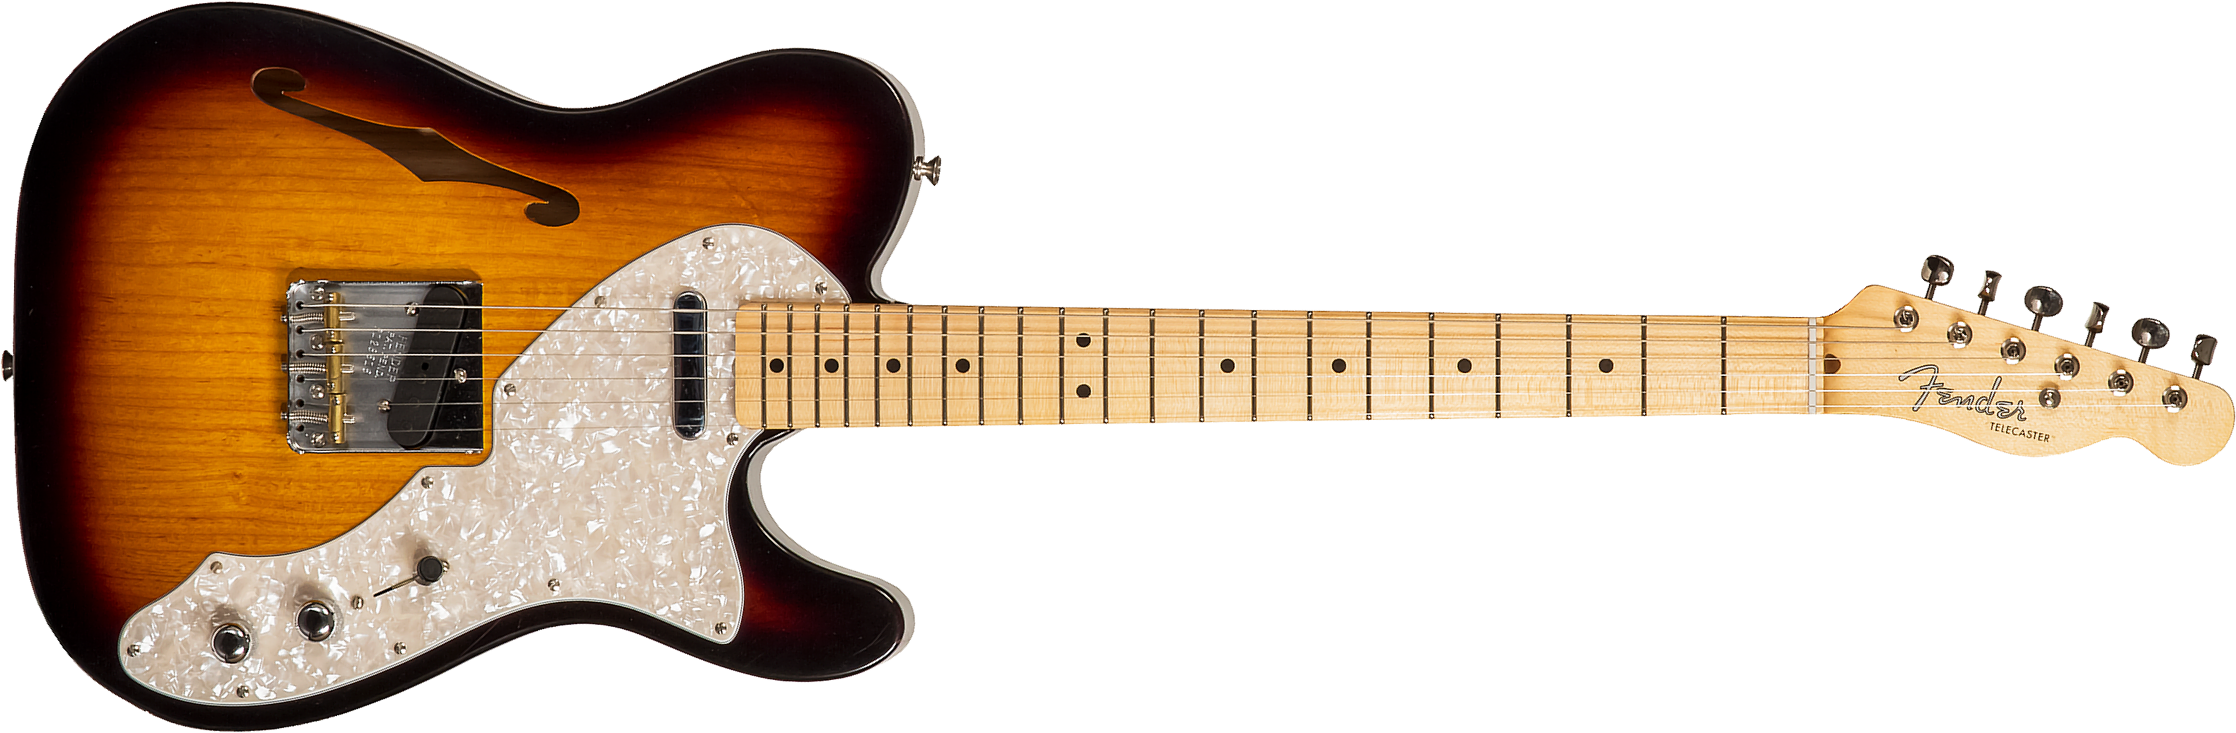 Fender Custom Shop Tele Thinline '50s 2s Ht Mn #r128616 - Closet Classic 2-color Sunburst - Tel shape electric guitar - Main picture